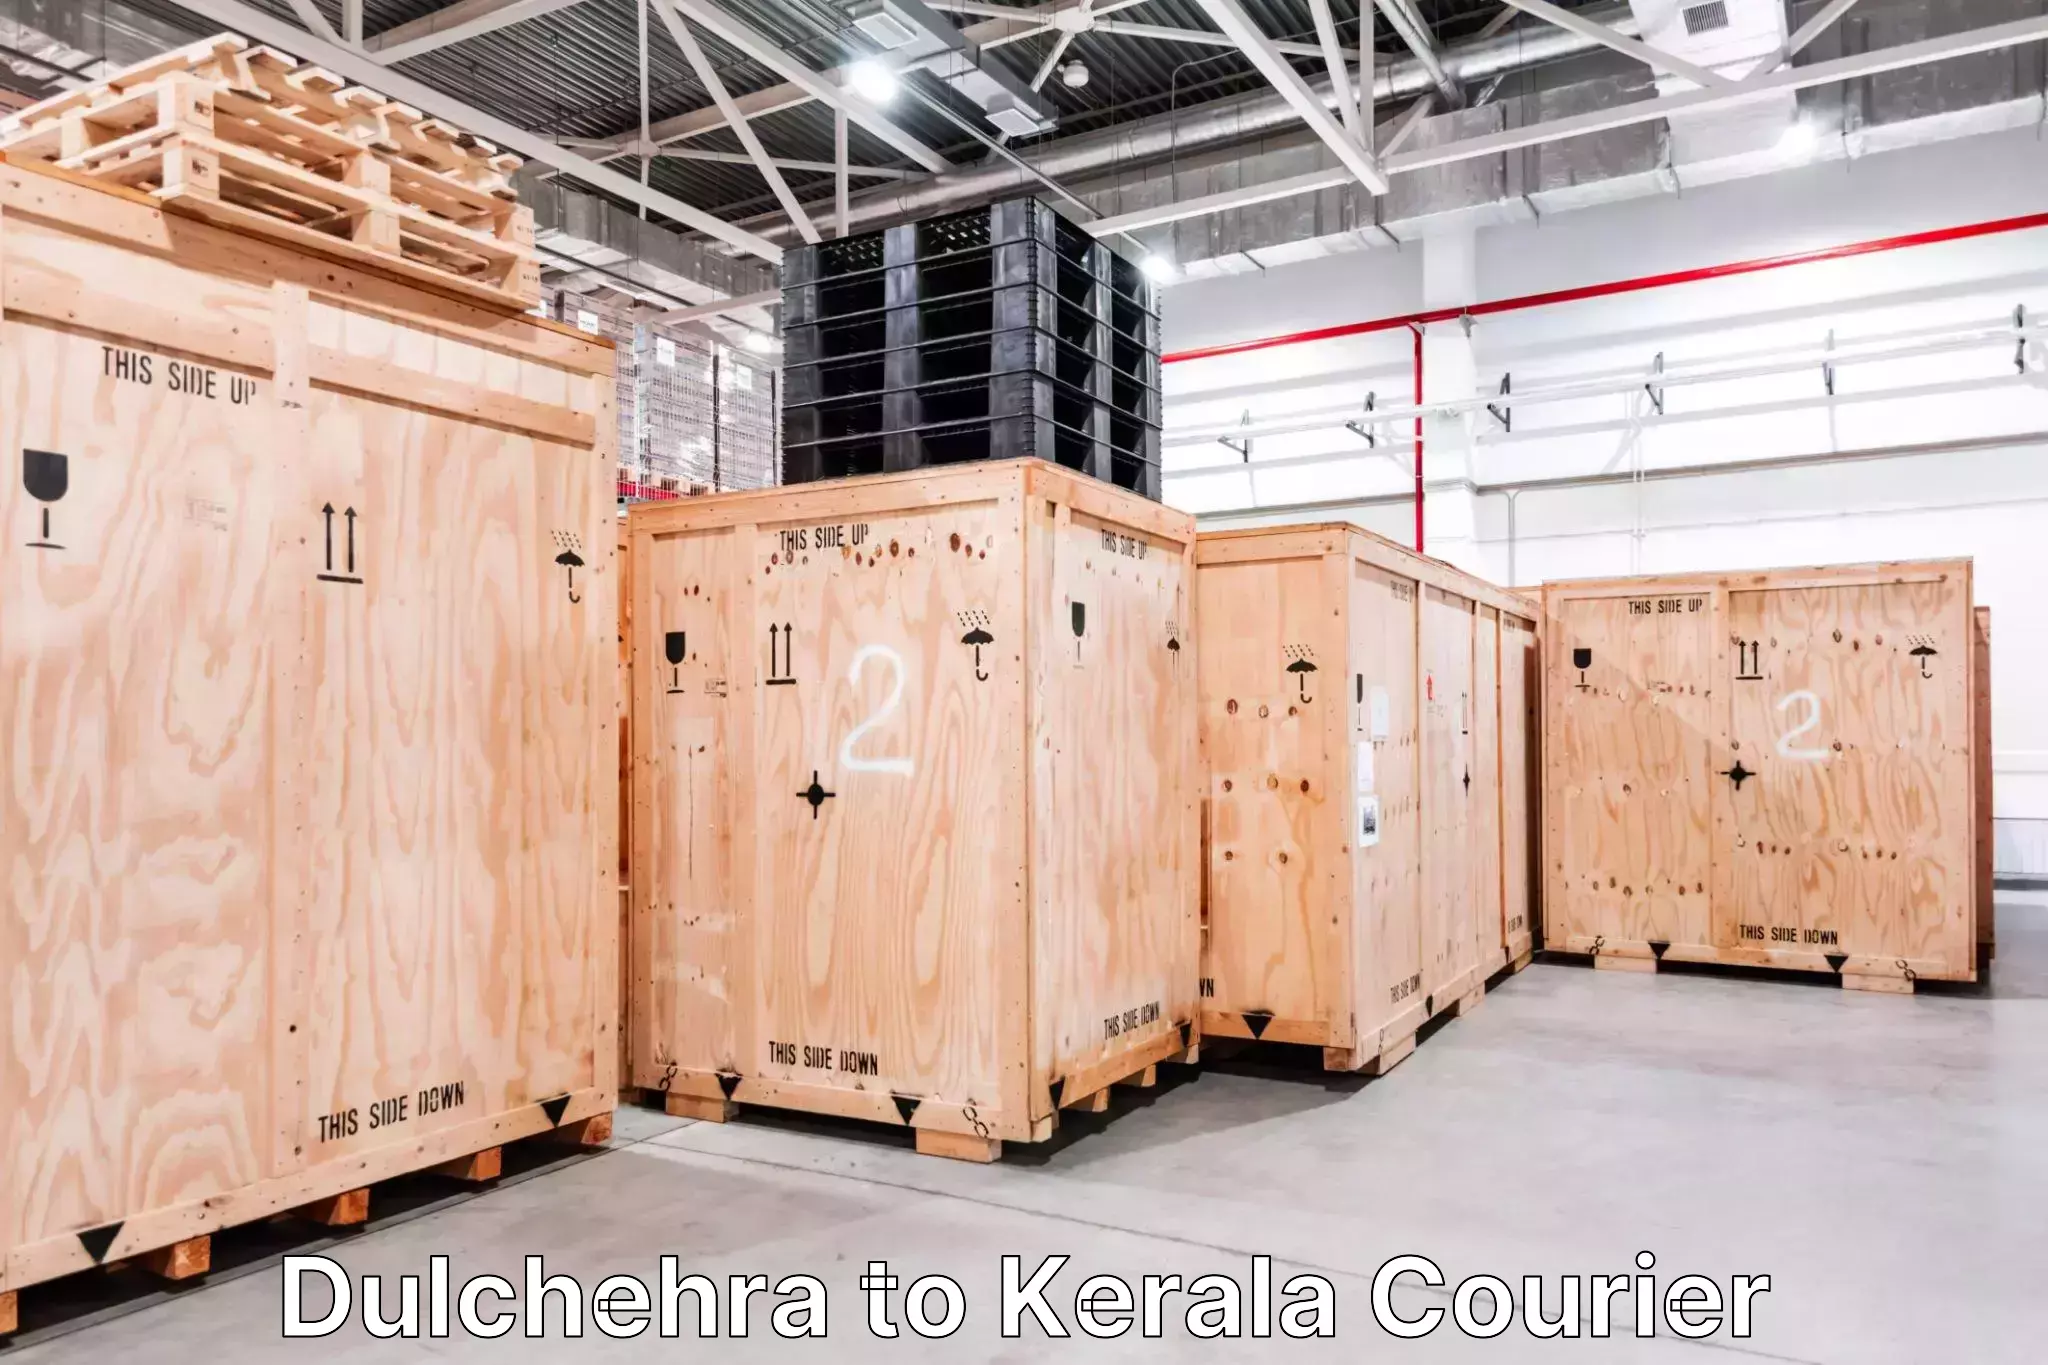 Luggage dispatch service Dulchehra to IIIT Kottayam